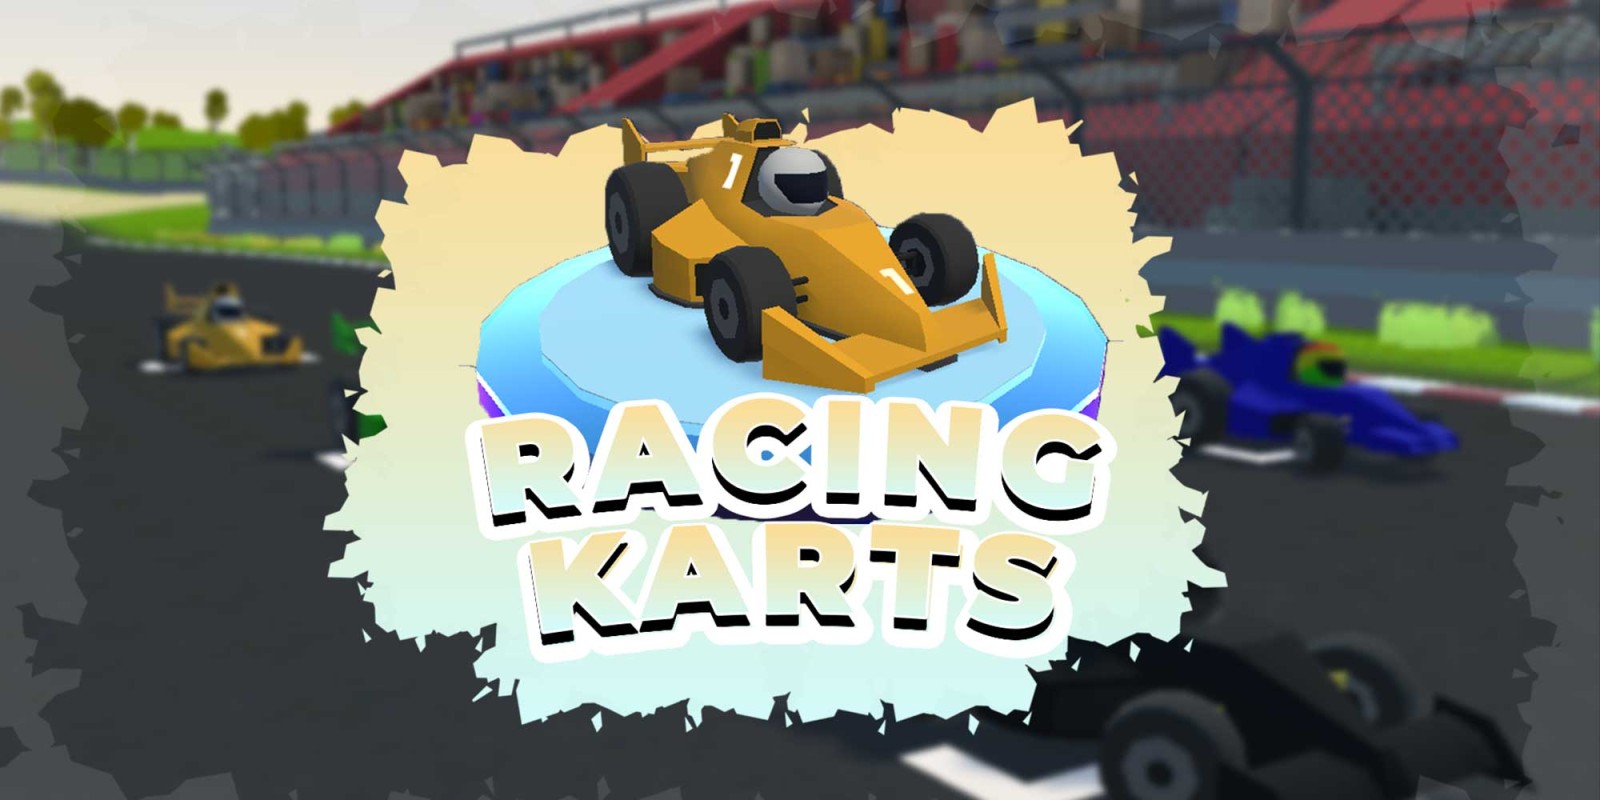 Racing Karts